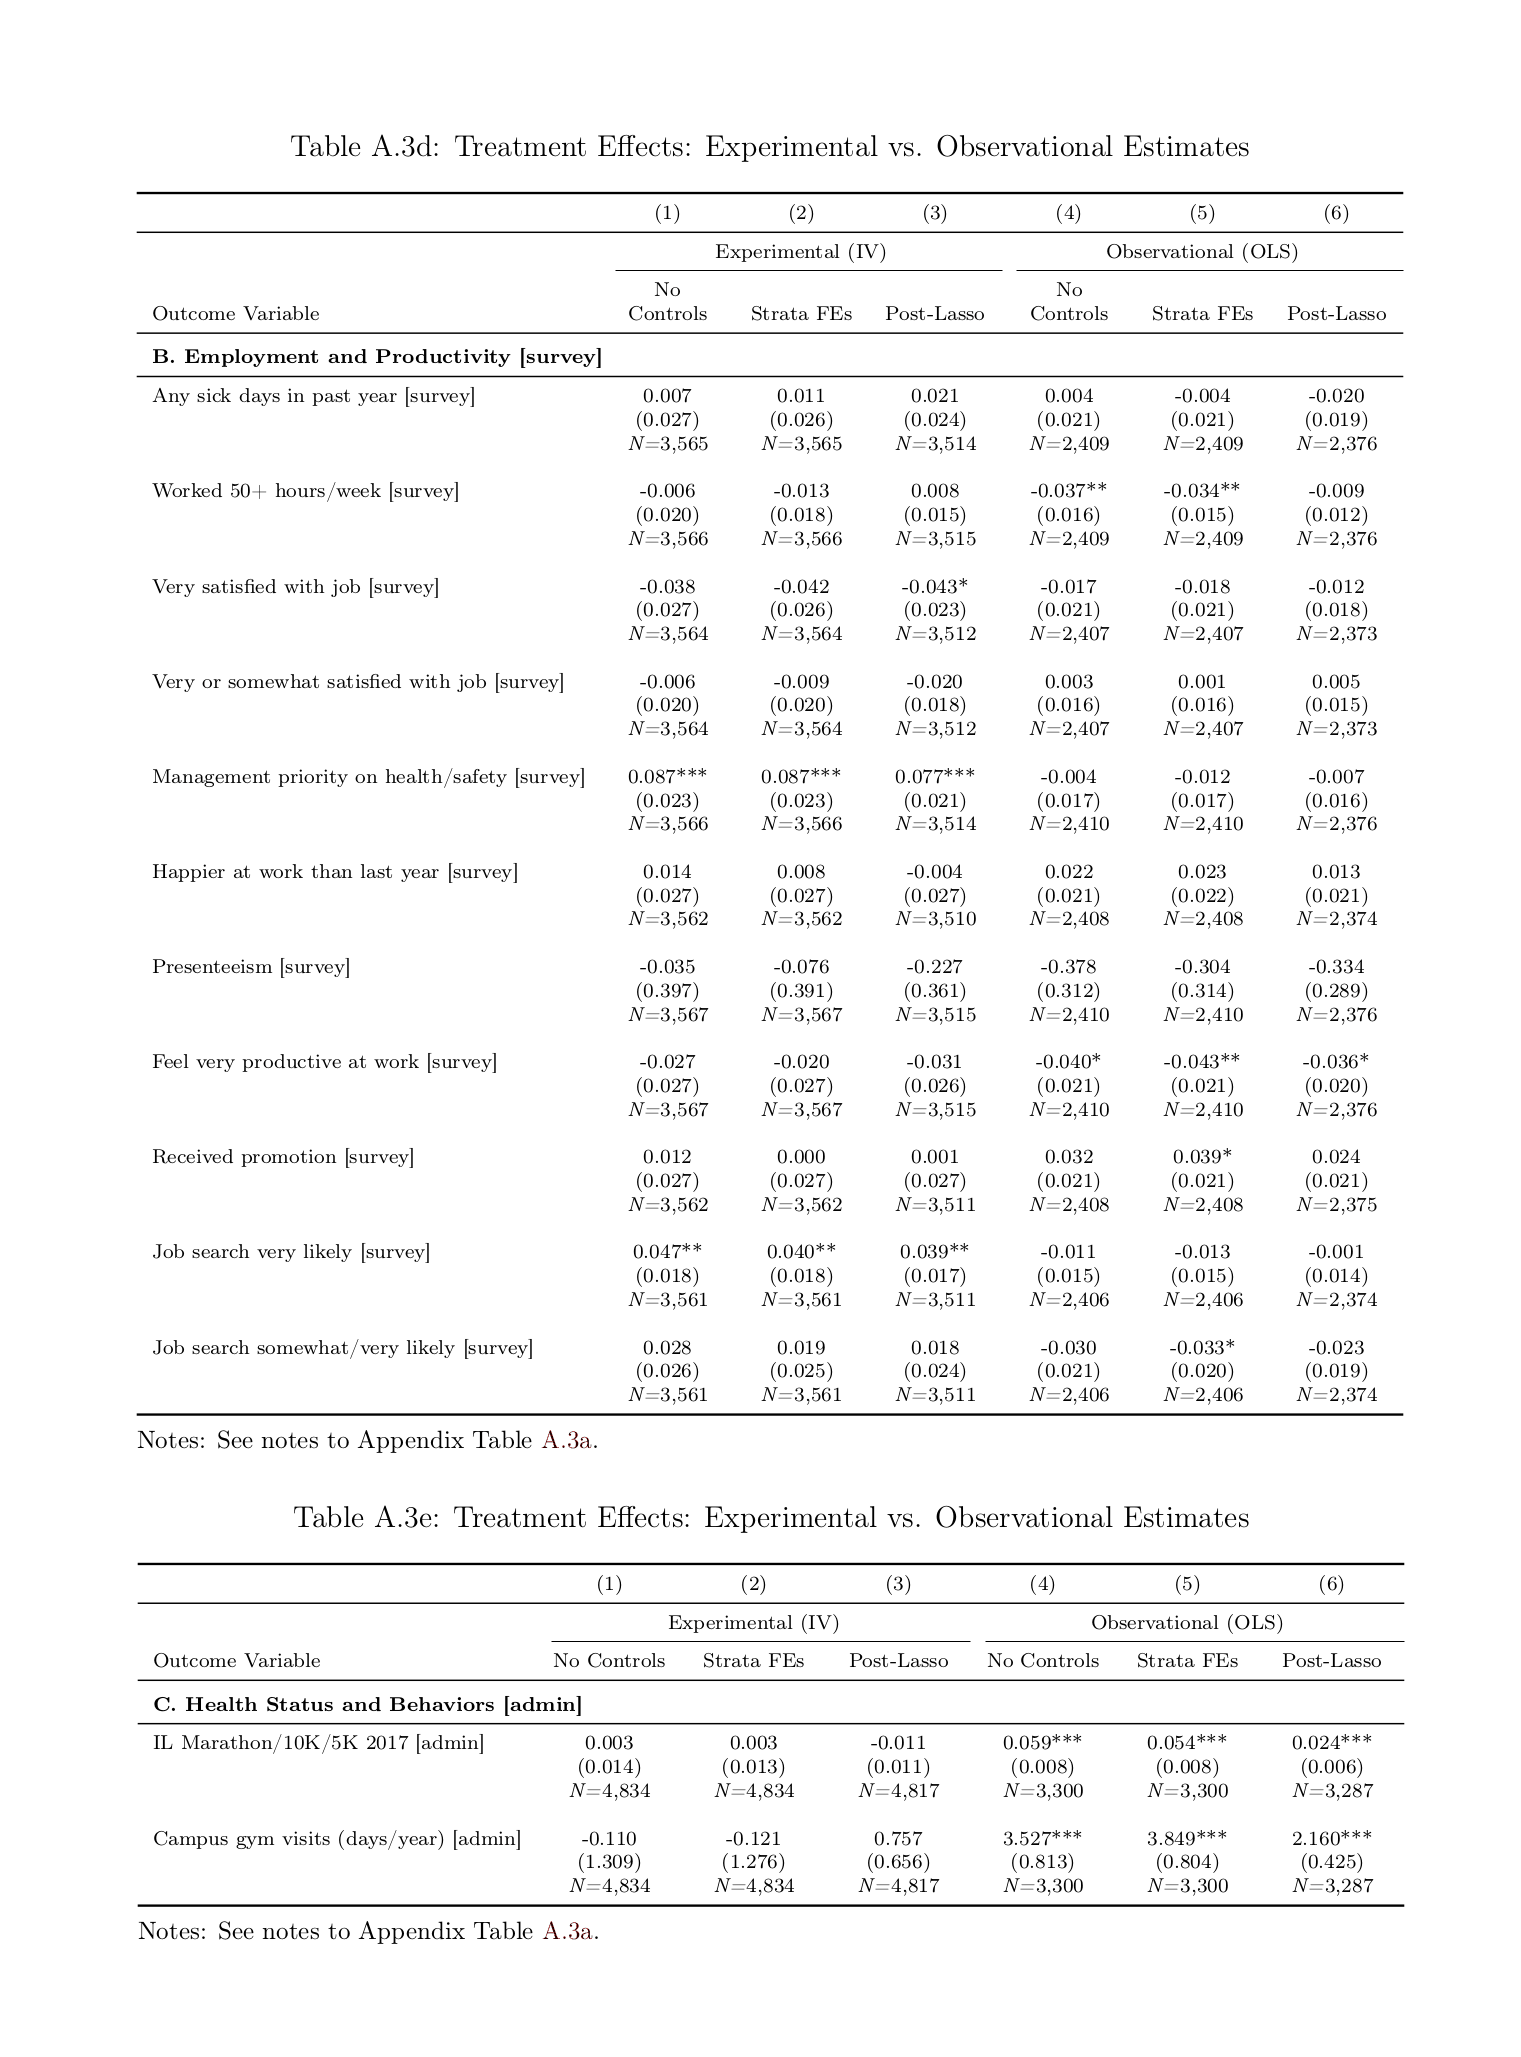 Jones et al 2018 appendix: Table A3, d-e, all randomized vs correlational estimates